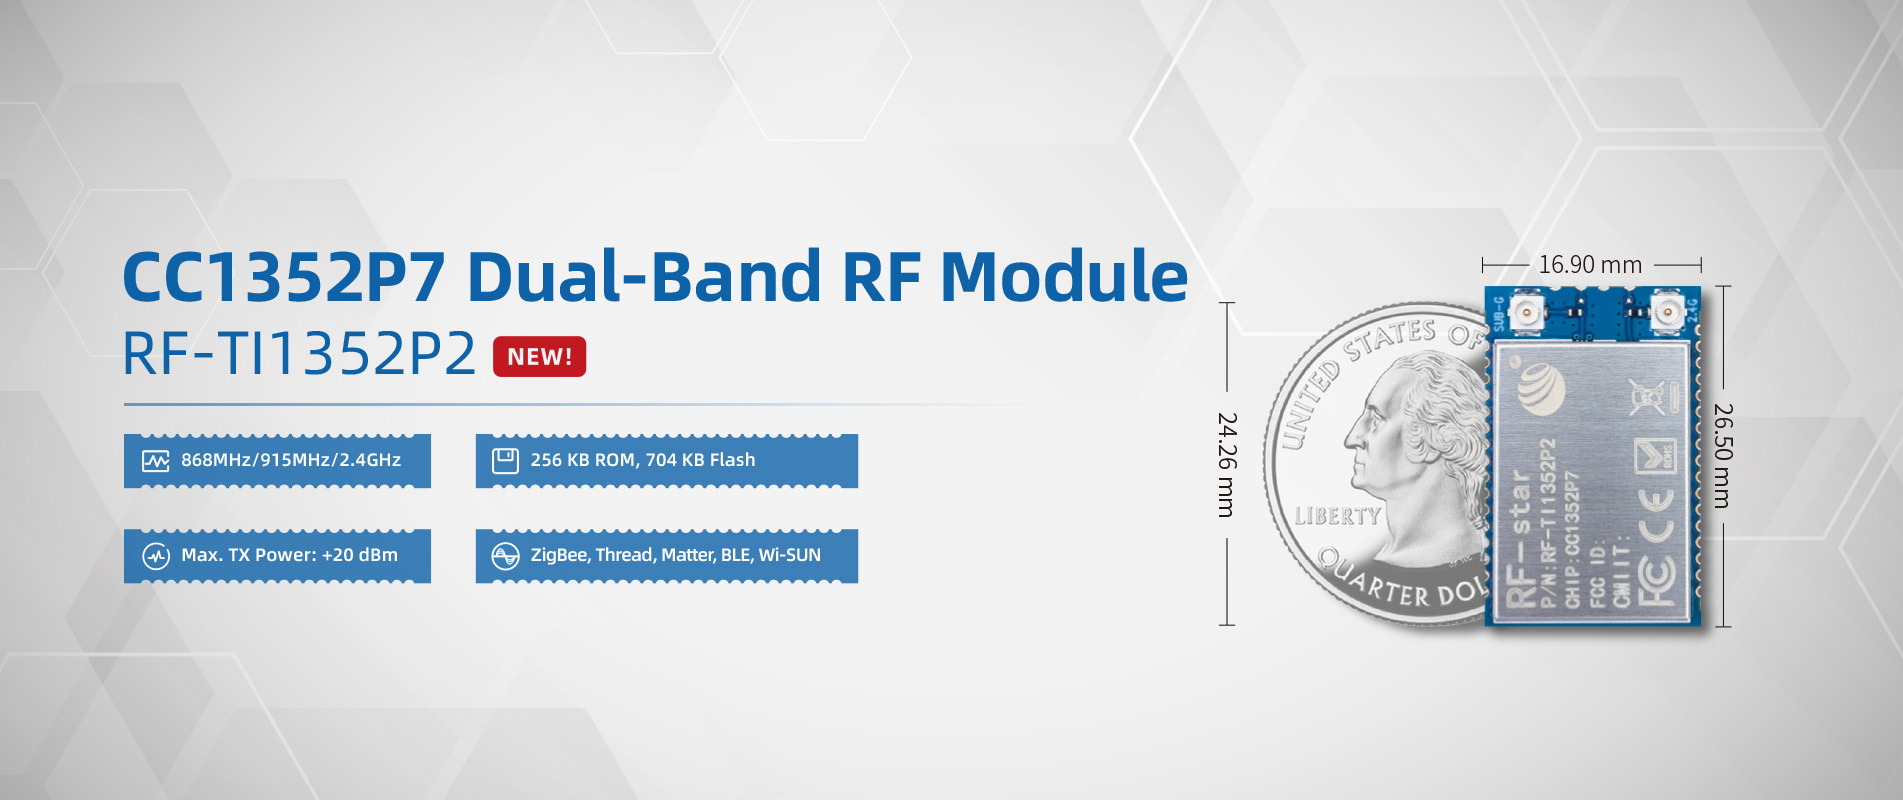 CC1352P7 Dual-Band RF Module